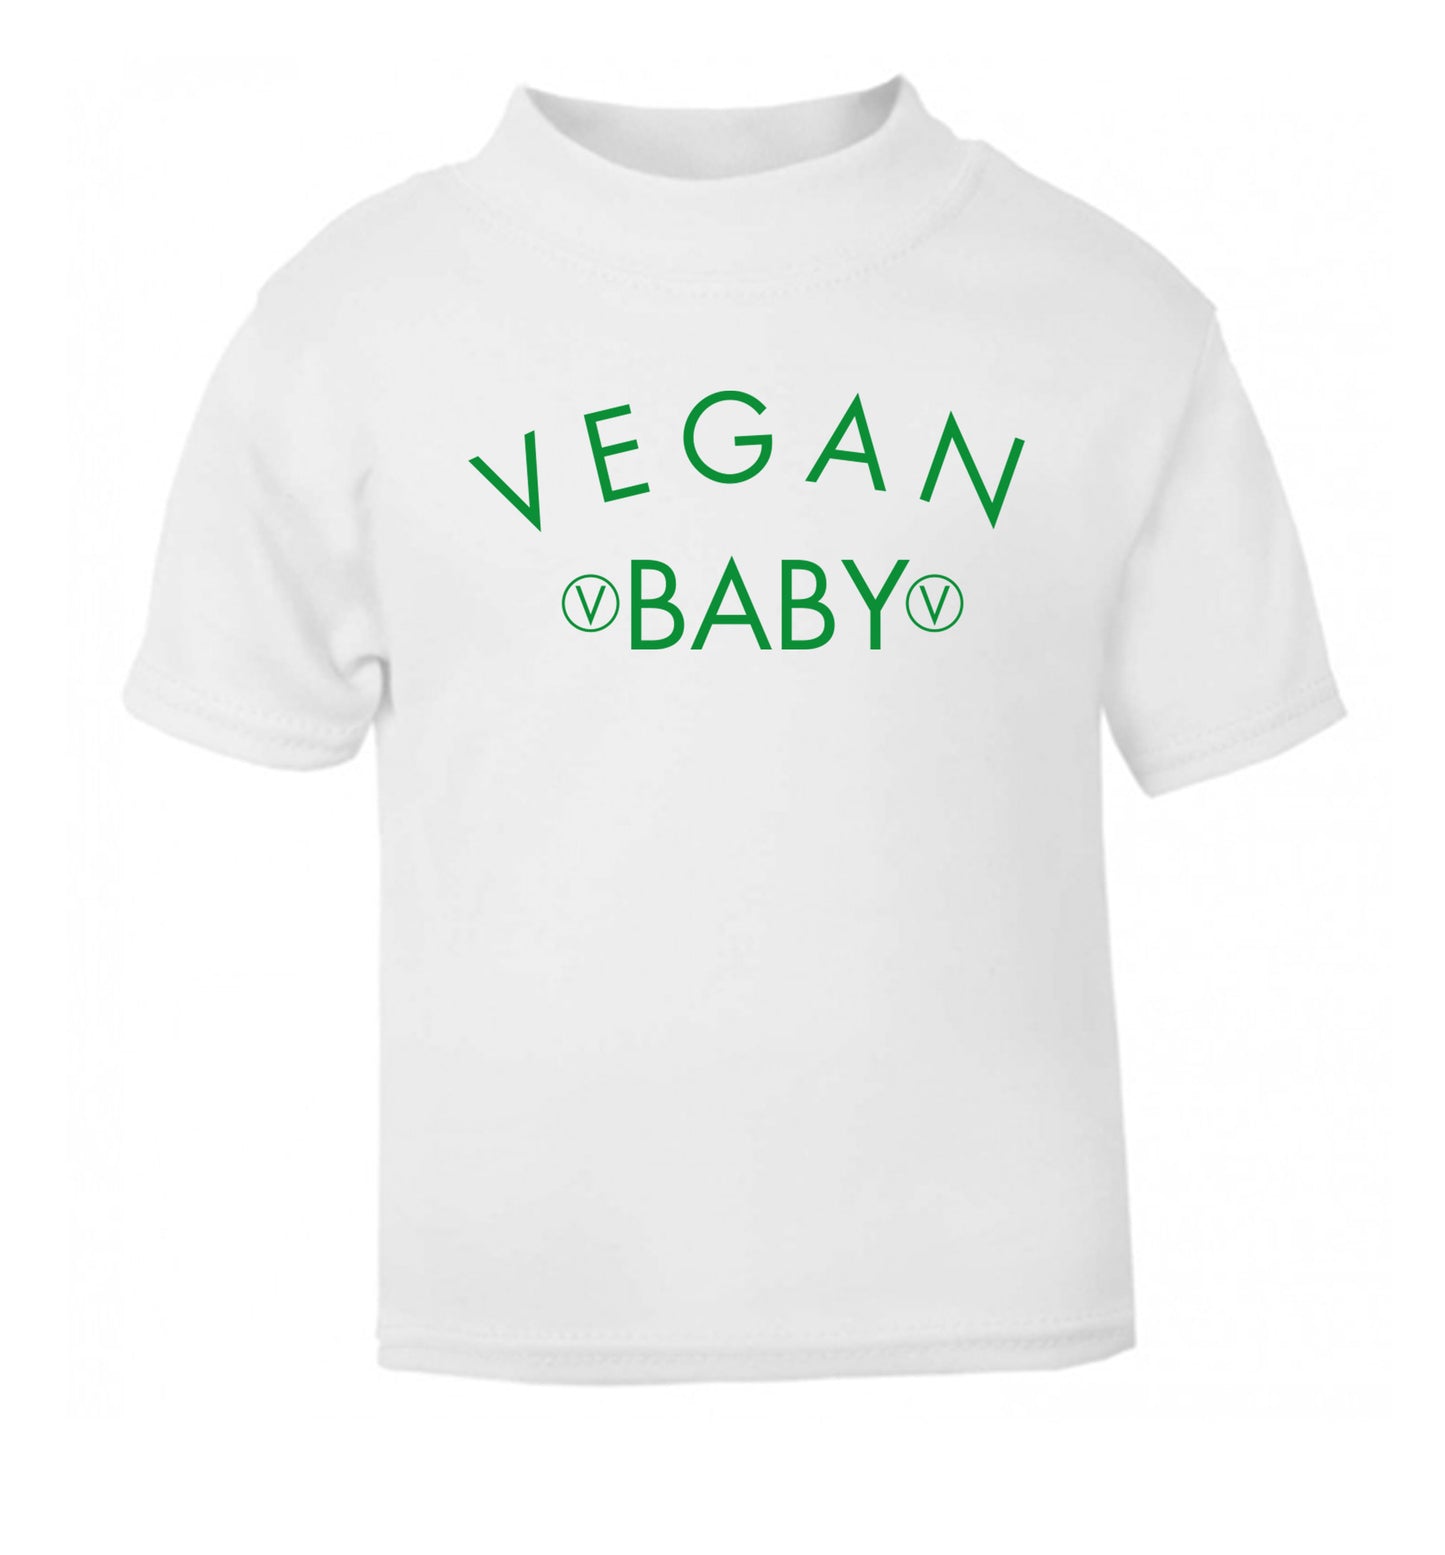 Vegan baby white Baby Toddler Tshirt 2 Years